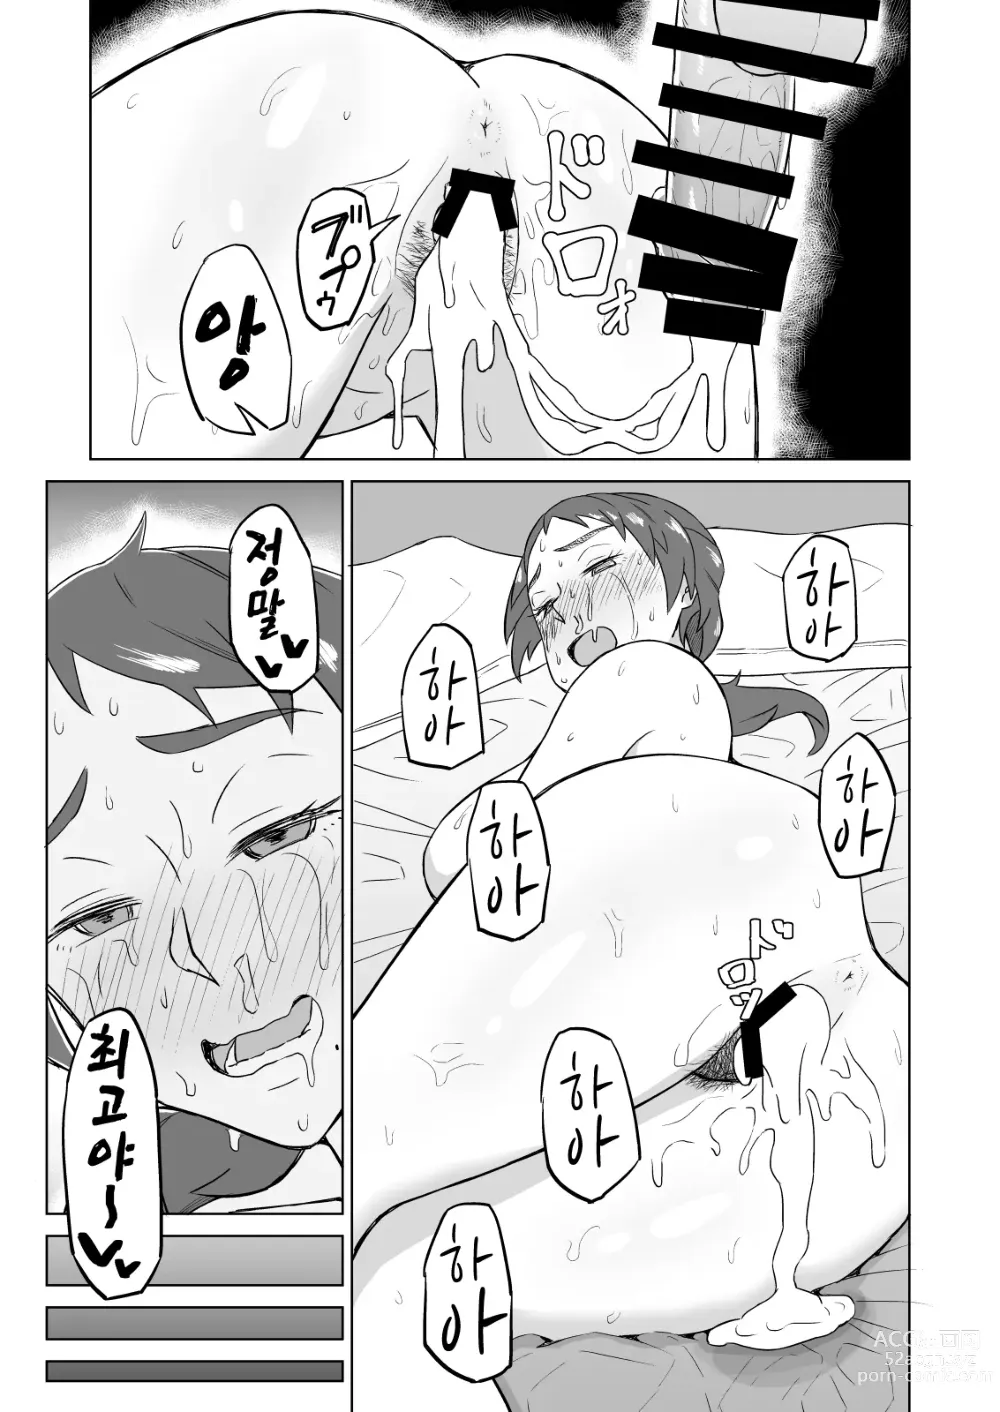 Page 24 of doujinshi 옆집 유부녀에게 저녁식사에 초대받았더니 욕구불만으로 SEX해버린 이야기